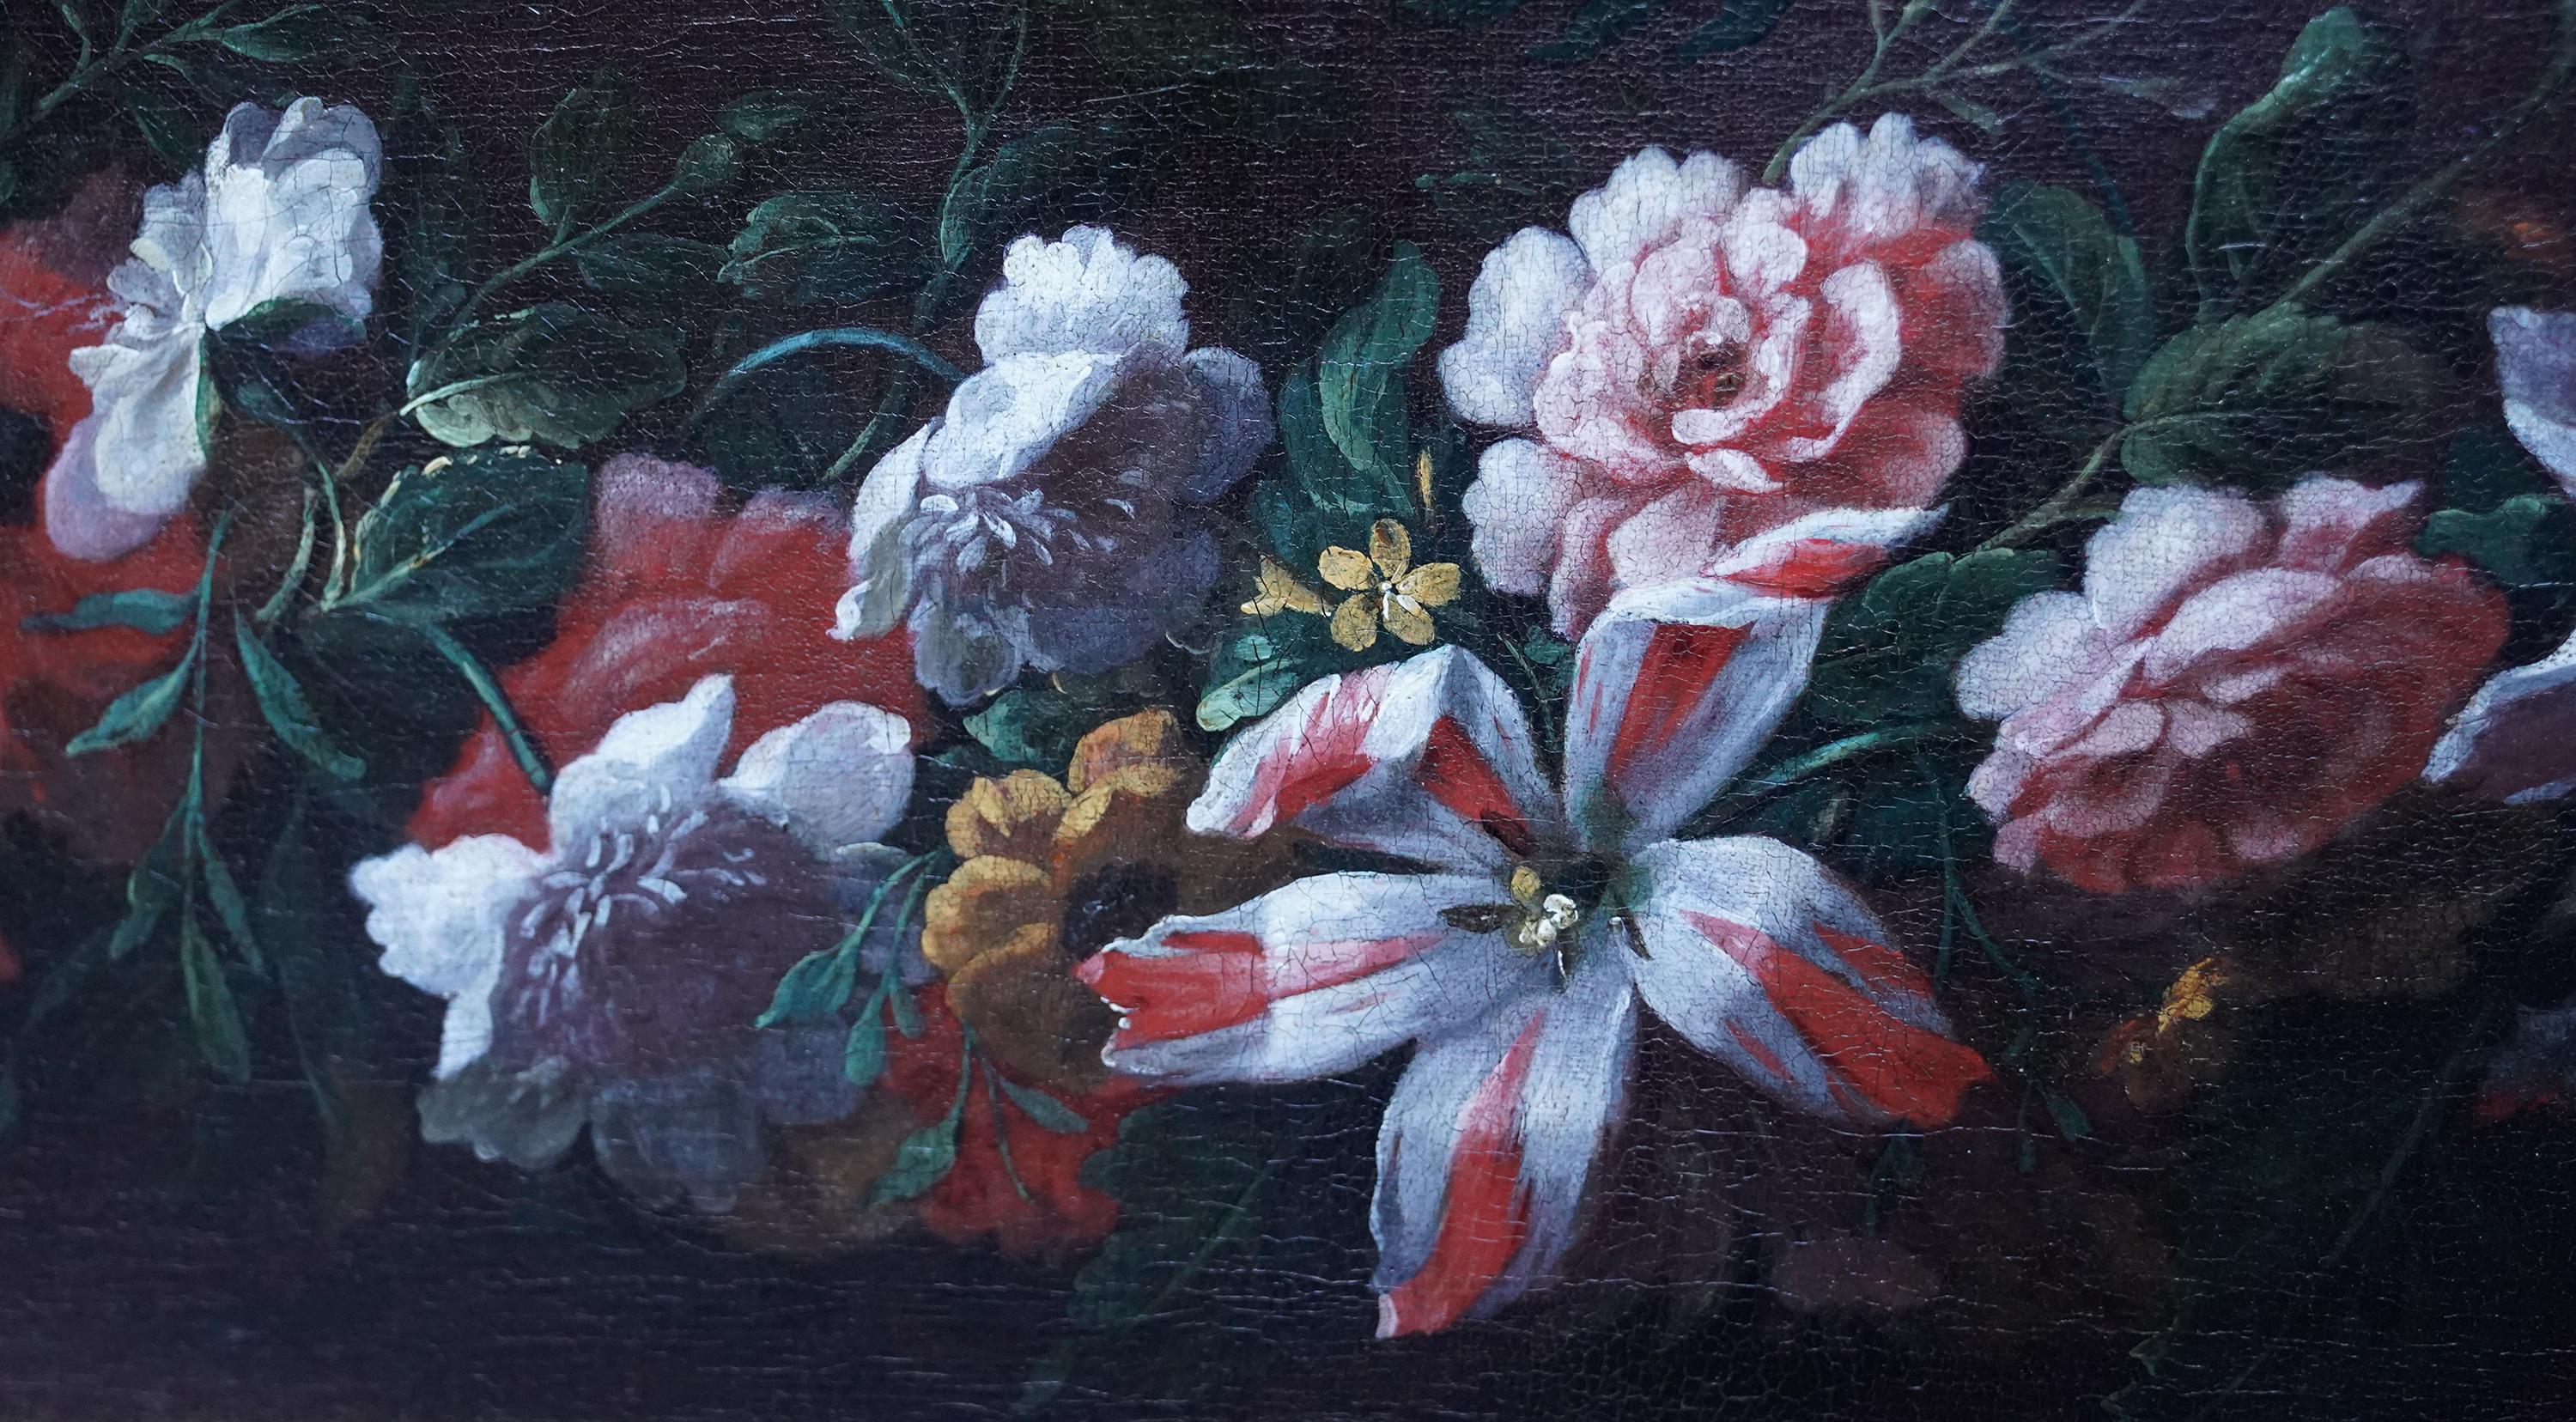 Dieses prächtige Ölgemälde eines Blumenstilllebens aus dem 18. Jahrhundert wird dem flämischen Künstler Pieter Casteels III. zugeschrieben. Um 1730 gemalt, handelt es sich um eine Blumengirlande oder einen Blumenstrauß, wie sie von Casteels häufig